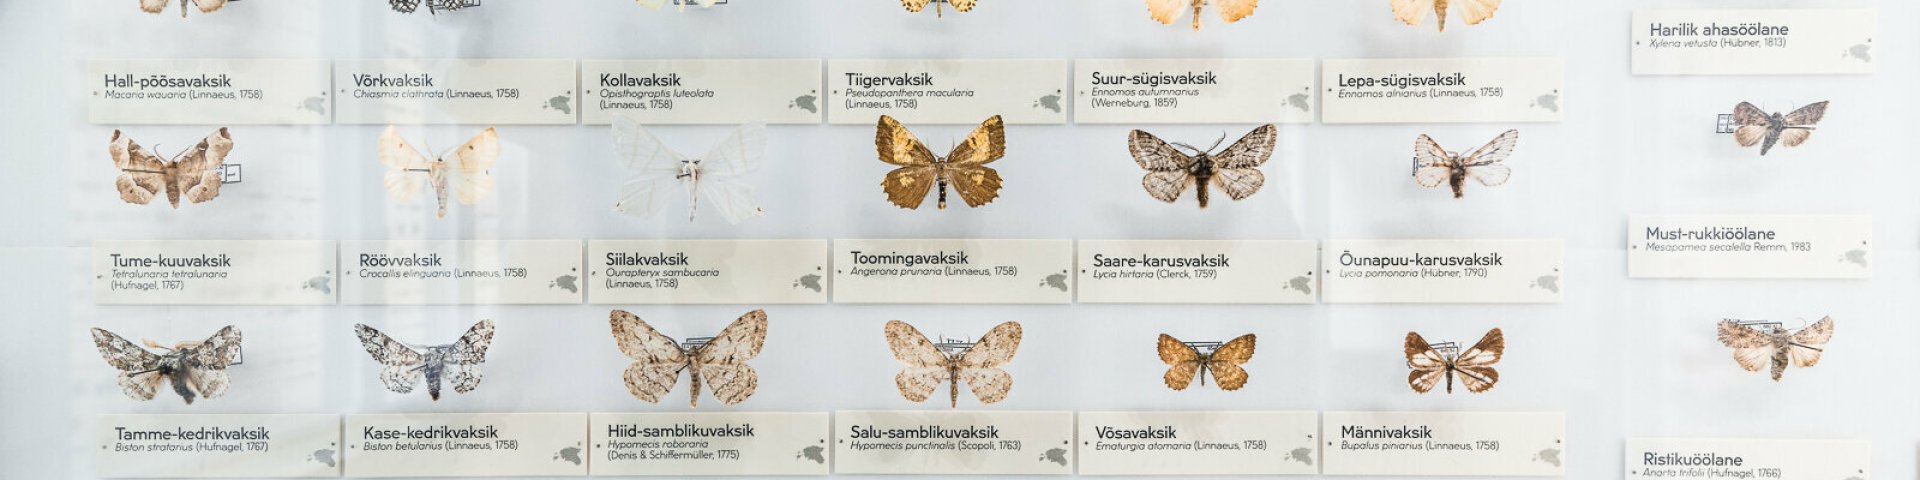 Loodusharidus - Tartu Ülikooli loodusmuuseum ja botaanikaaed